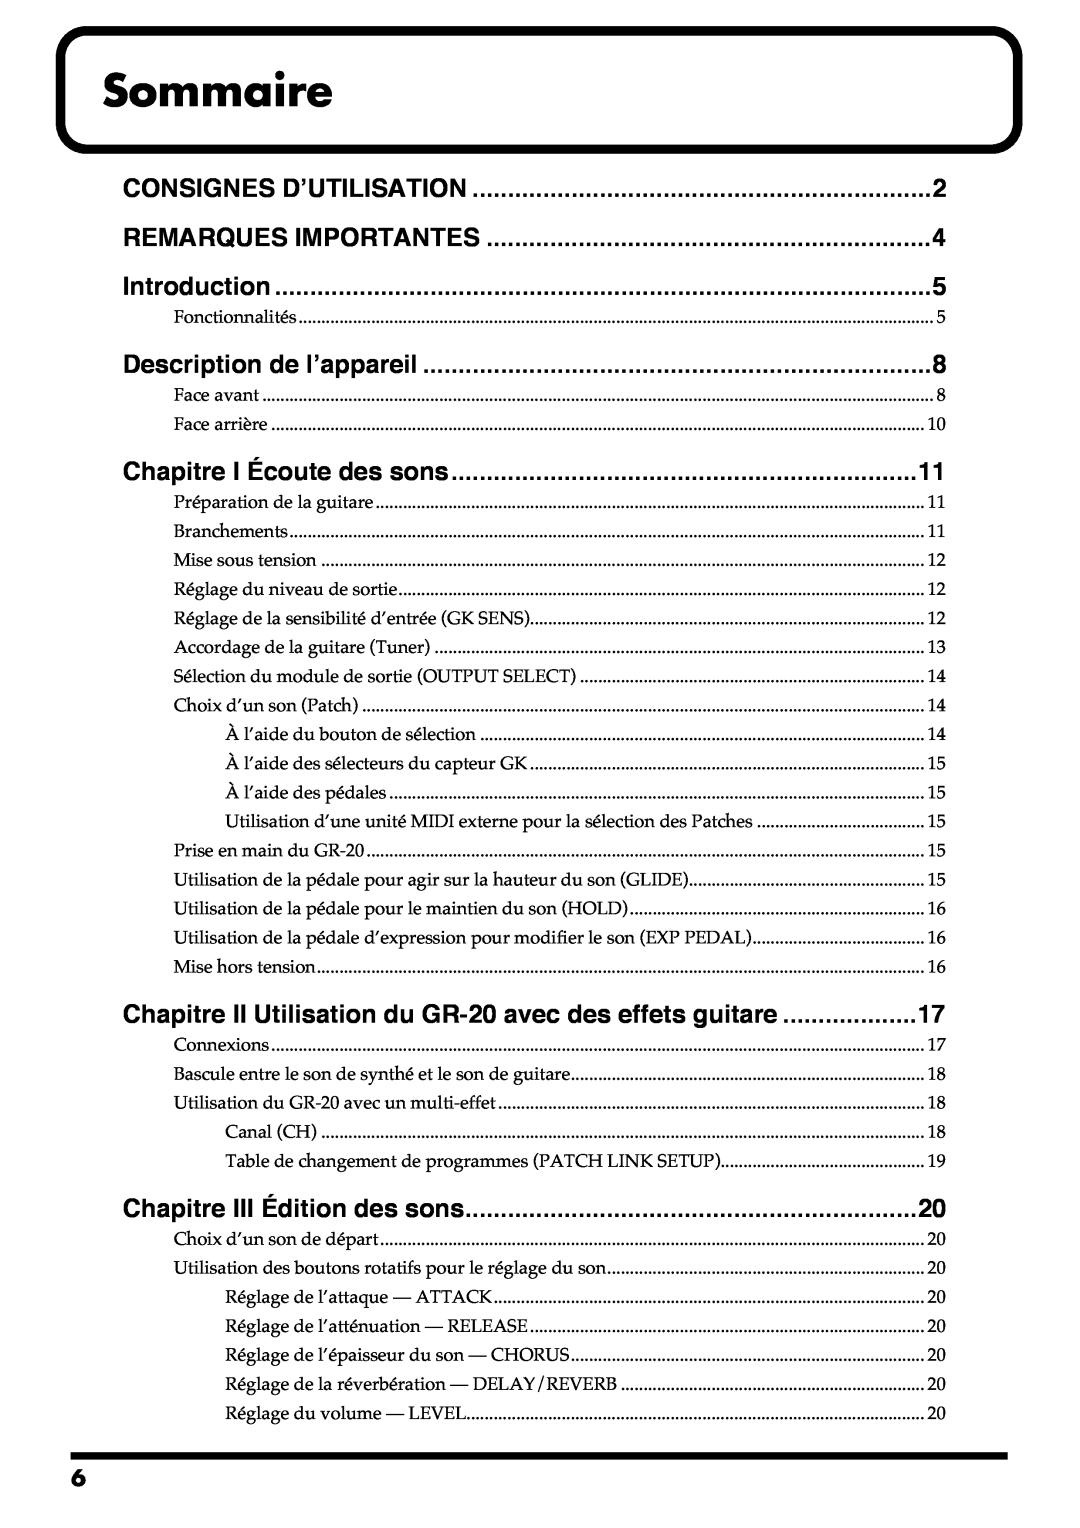 Roland GR-20 Sommaire, Introduction, Chapitre I Écoute des sons, Chapitre III Édition des sons, Consignes D’Utilisation 